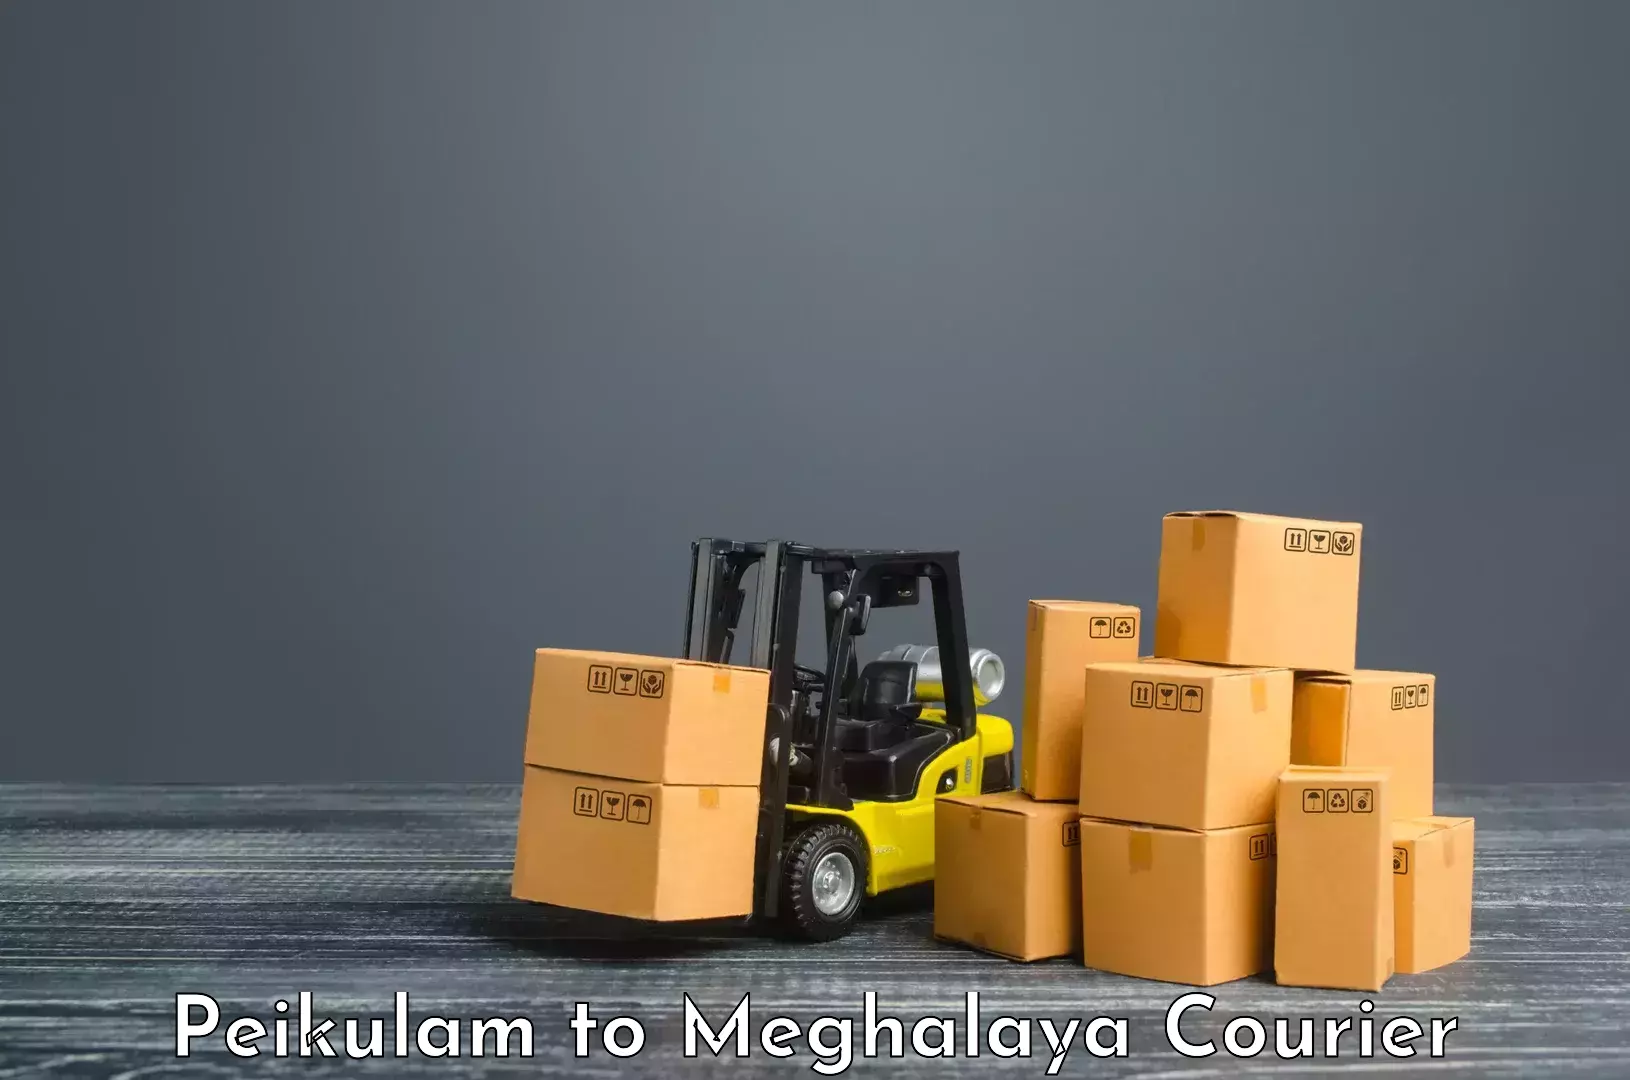 Customer-focused courier Peikulam to Jowai